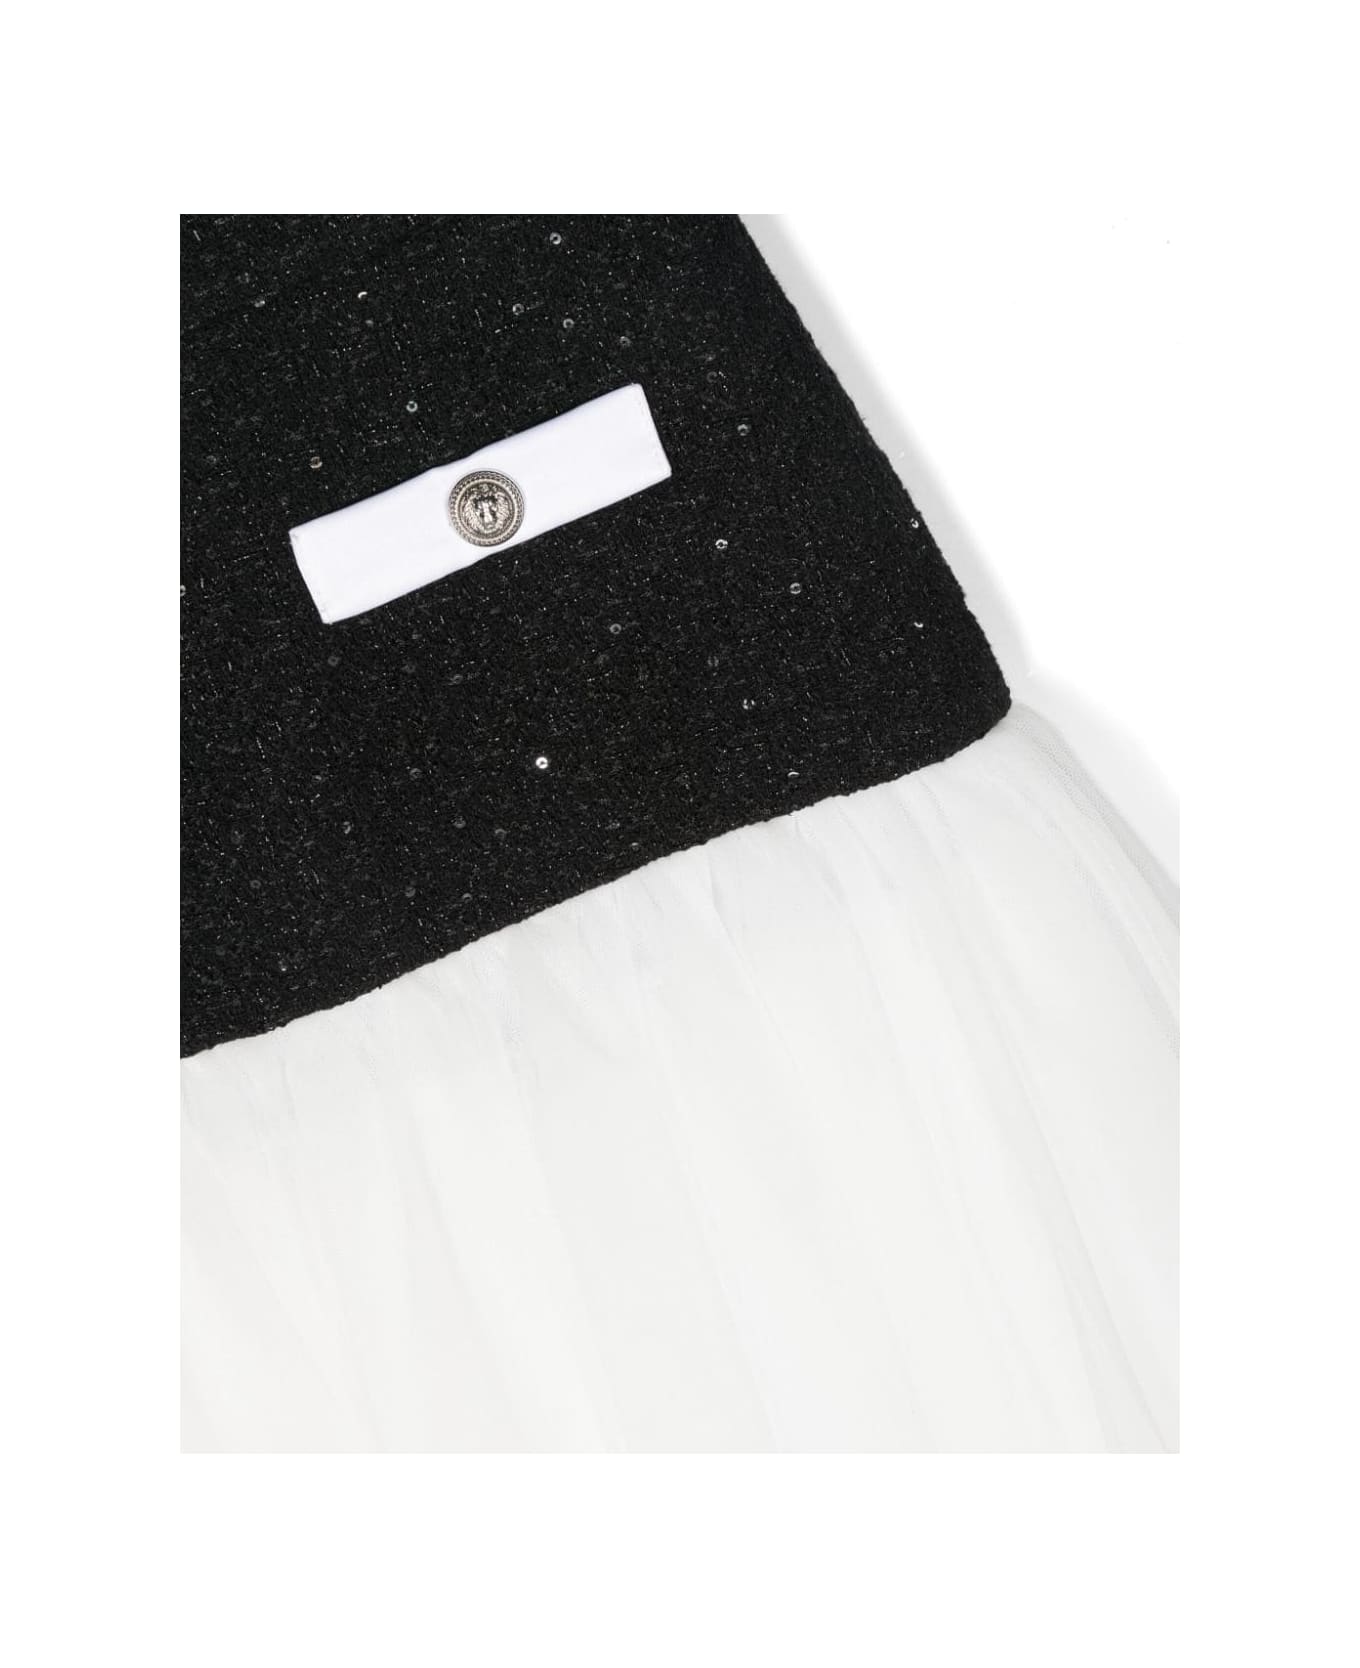 Balmain Skirt With Insert Design - Black